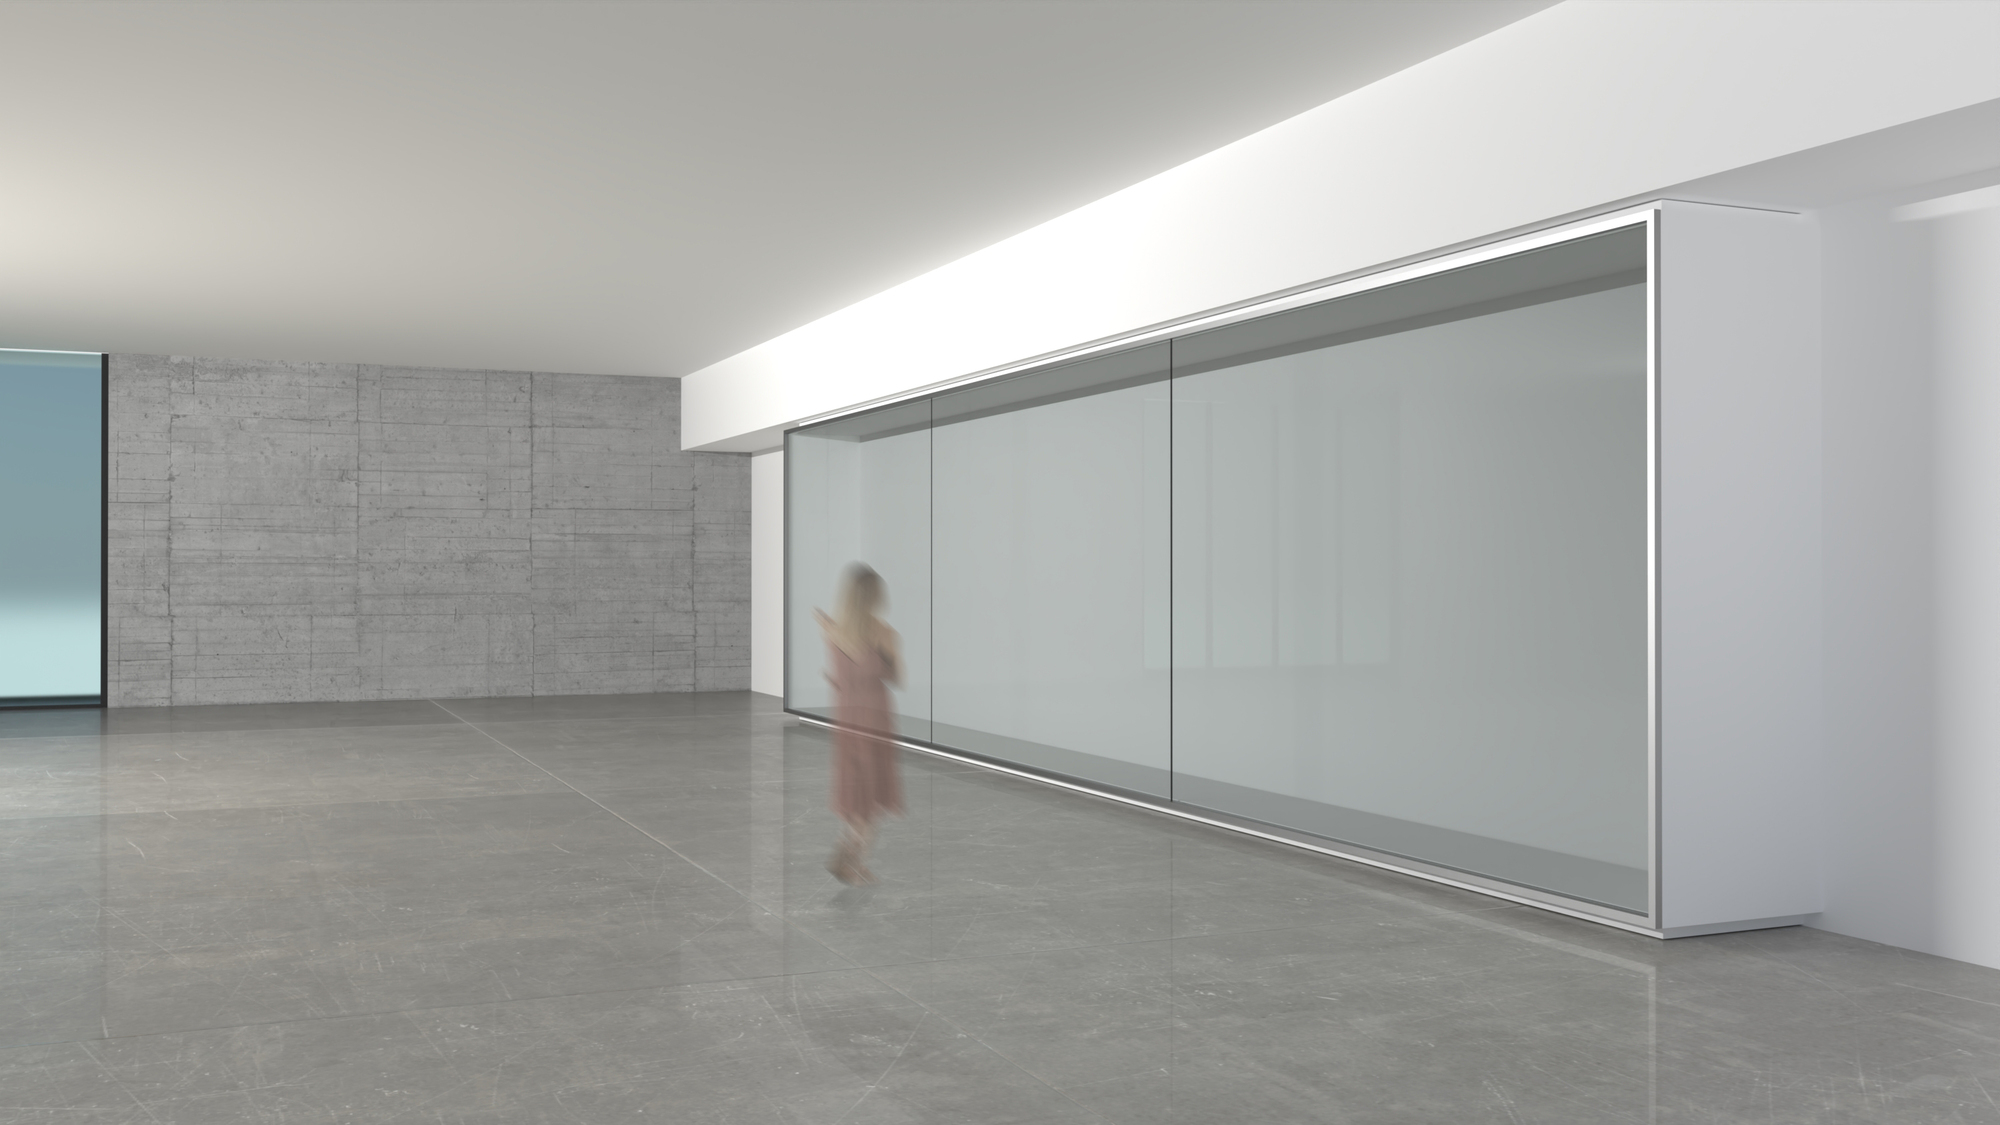 如何利用滑动玻璃板系统提升当代展览设计水平？|ART-Arrakis | 建筑室内设计的创新与灵感